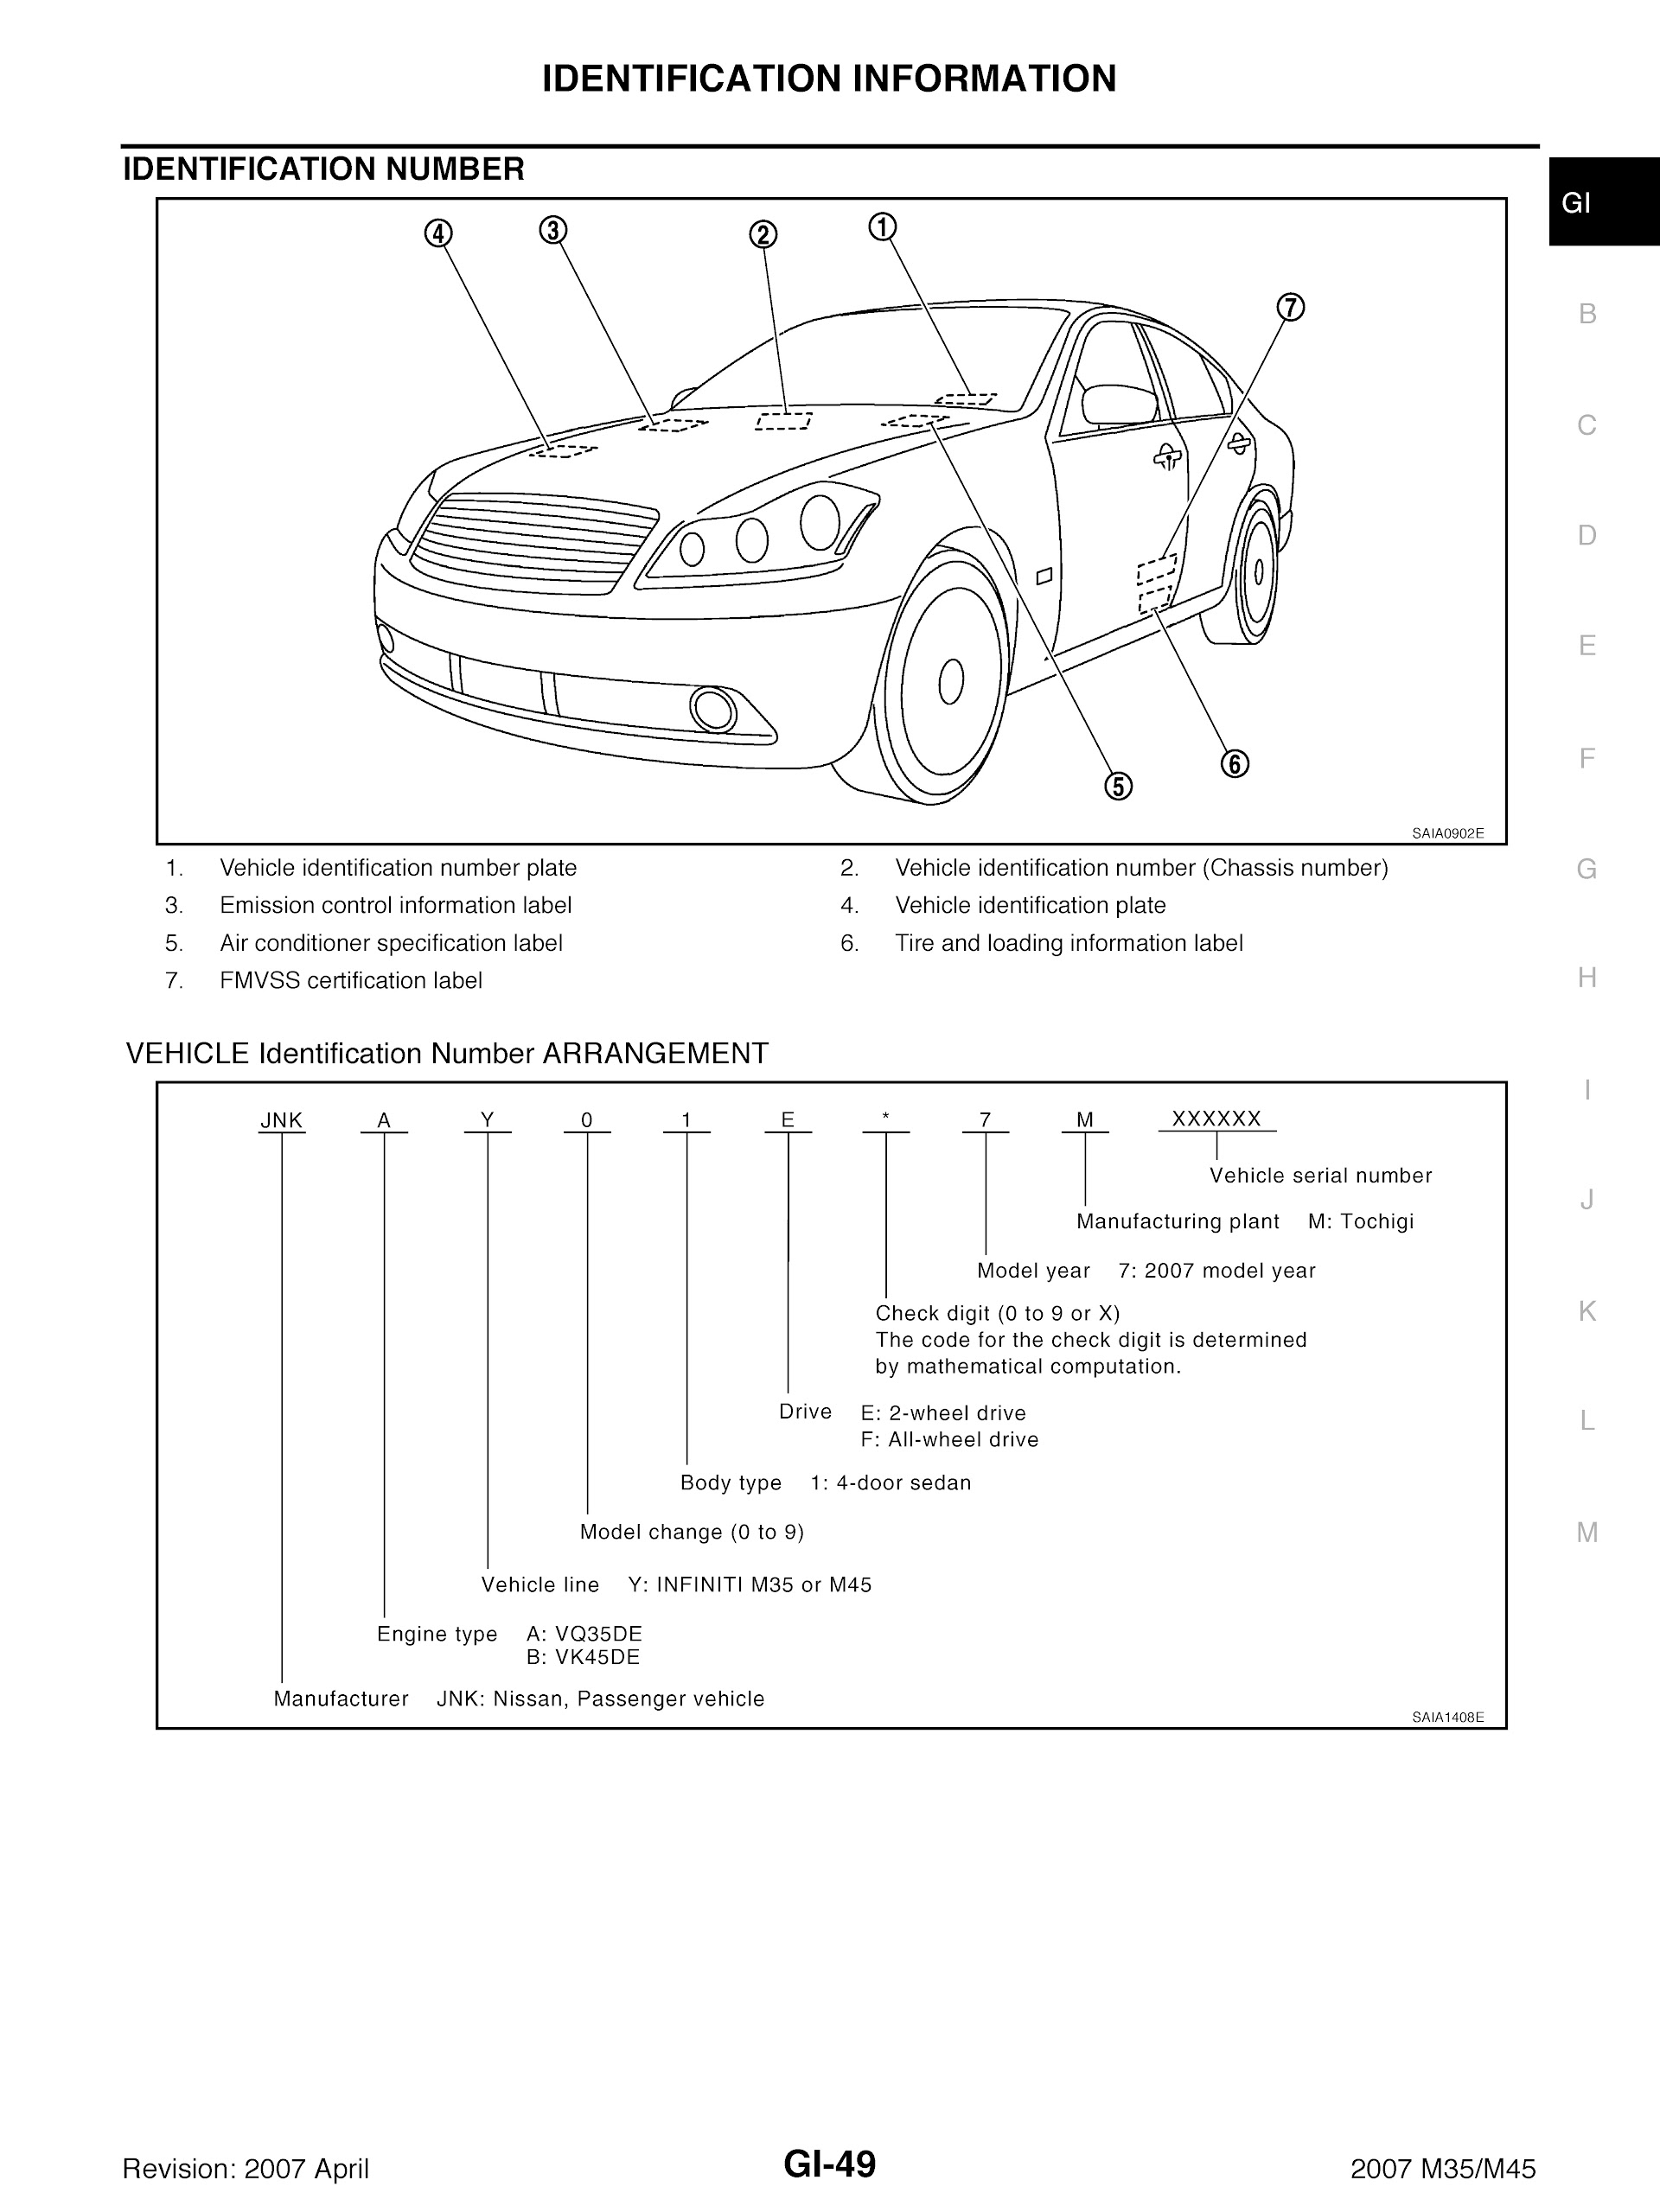 2003-2007 Infiniti Repair Manual M45 M35 Identification Information